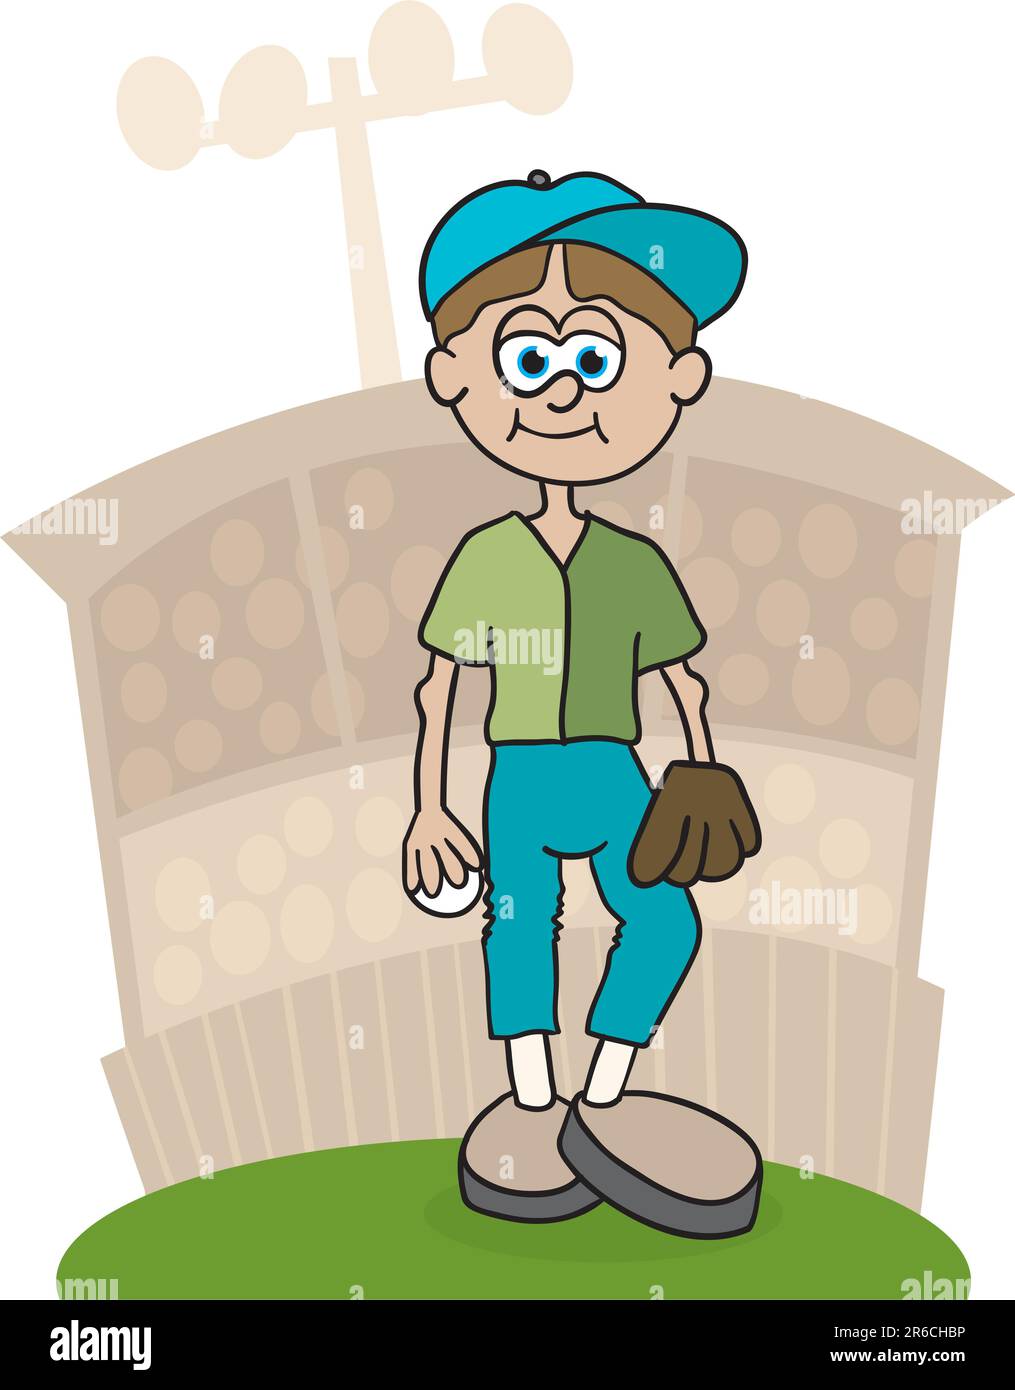 Immagine di un lanciatore di baseball in piedi sul tumulo. Illustrazione Vettoriale